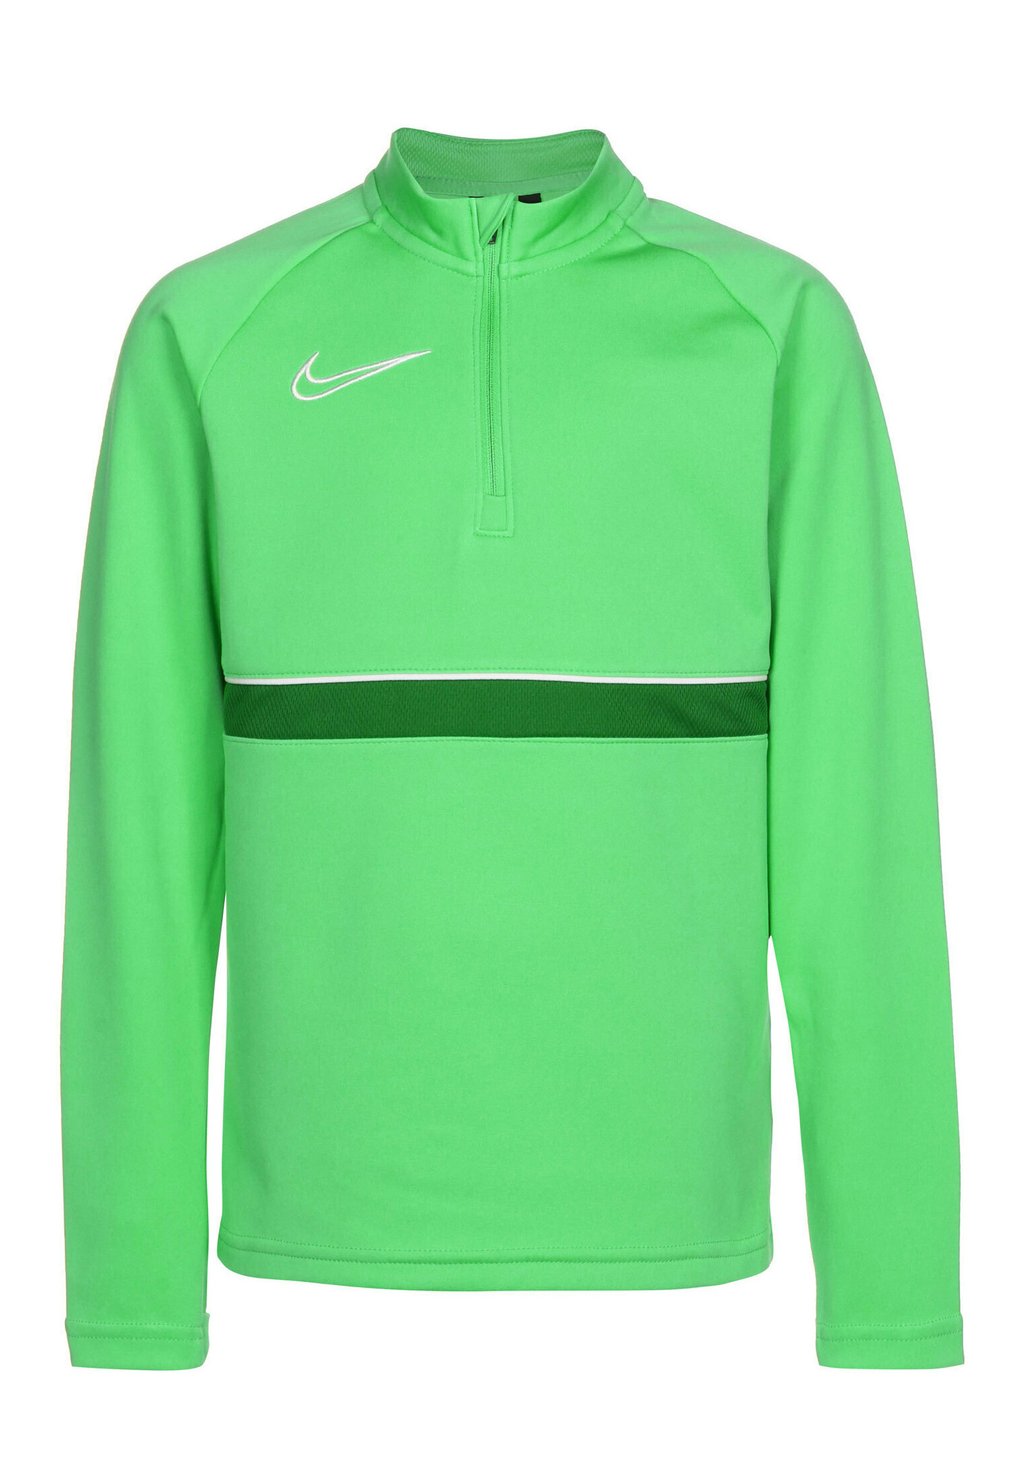 Спортивная футболка Academy 21 Drill Unisex Nike, цвет light green spark / white / pine green